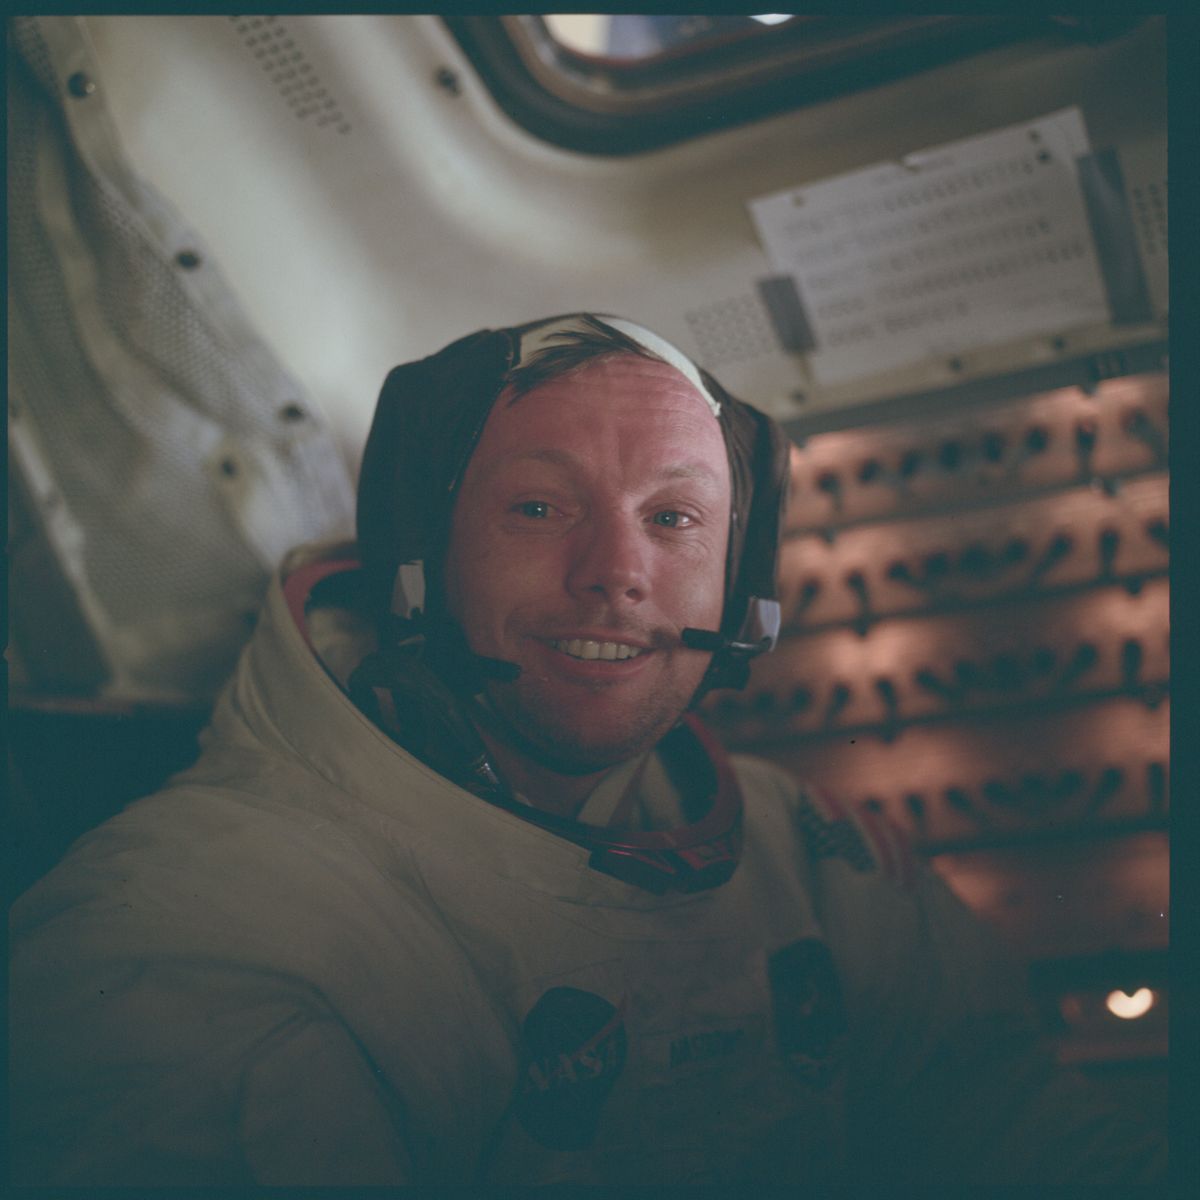 Misja Apollo 11 rozpoczęła się 50 lat temu. Po czterech dniach lotu pierwszy człowiek stanął na Księżycu